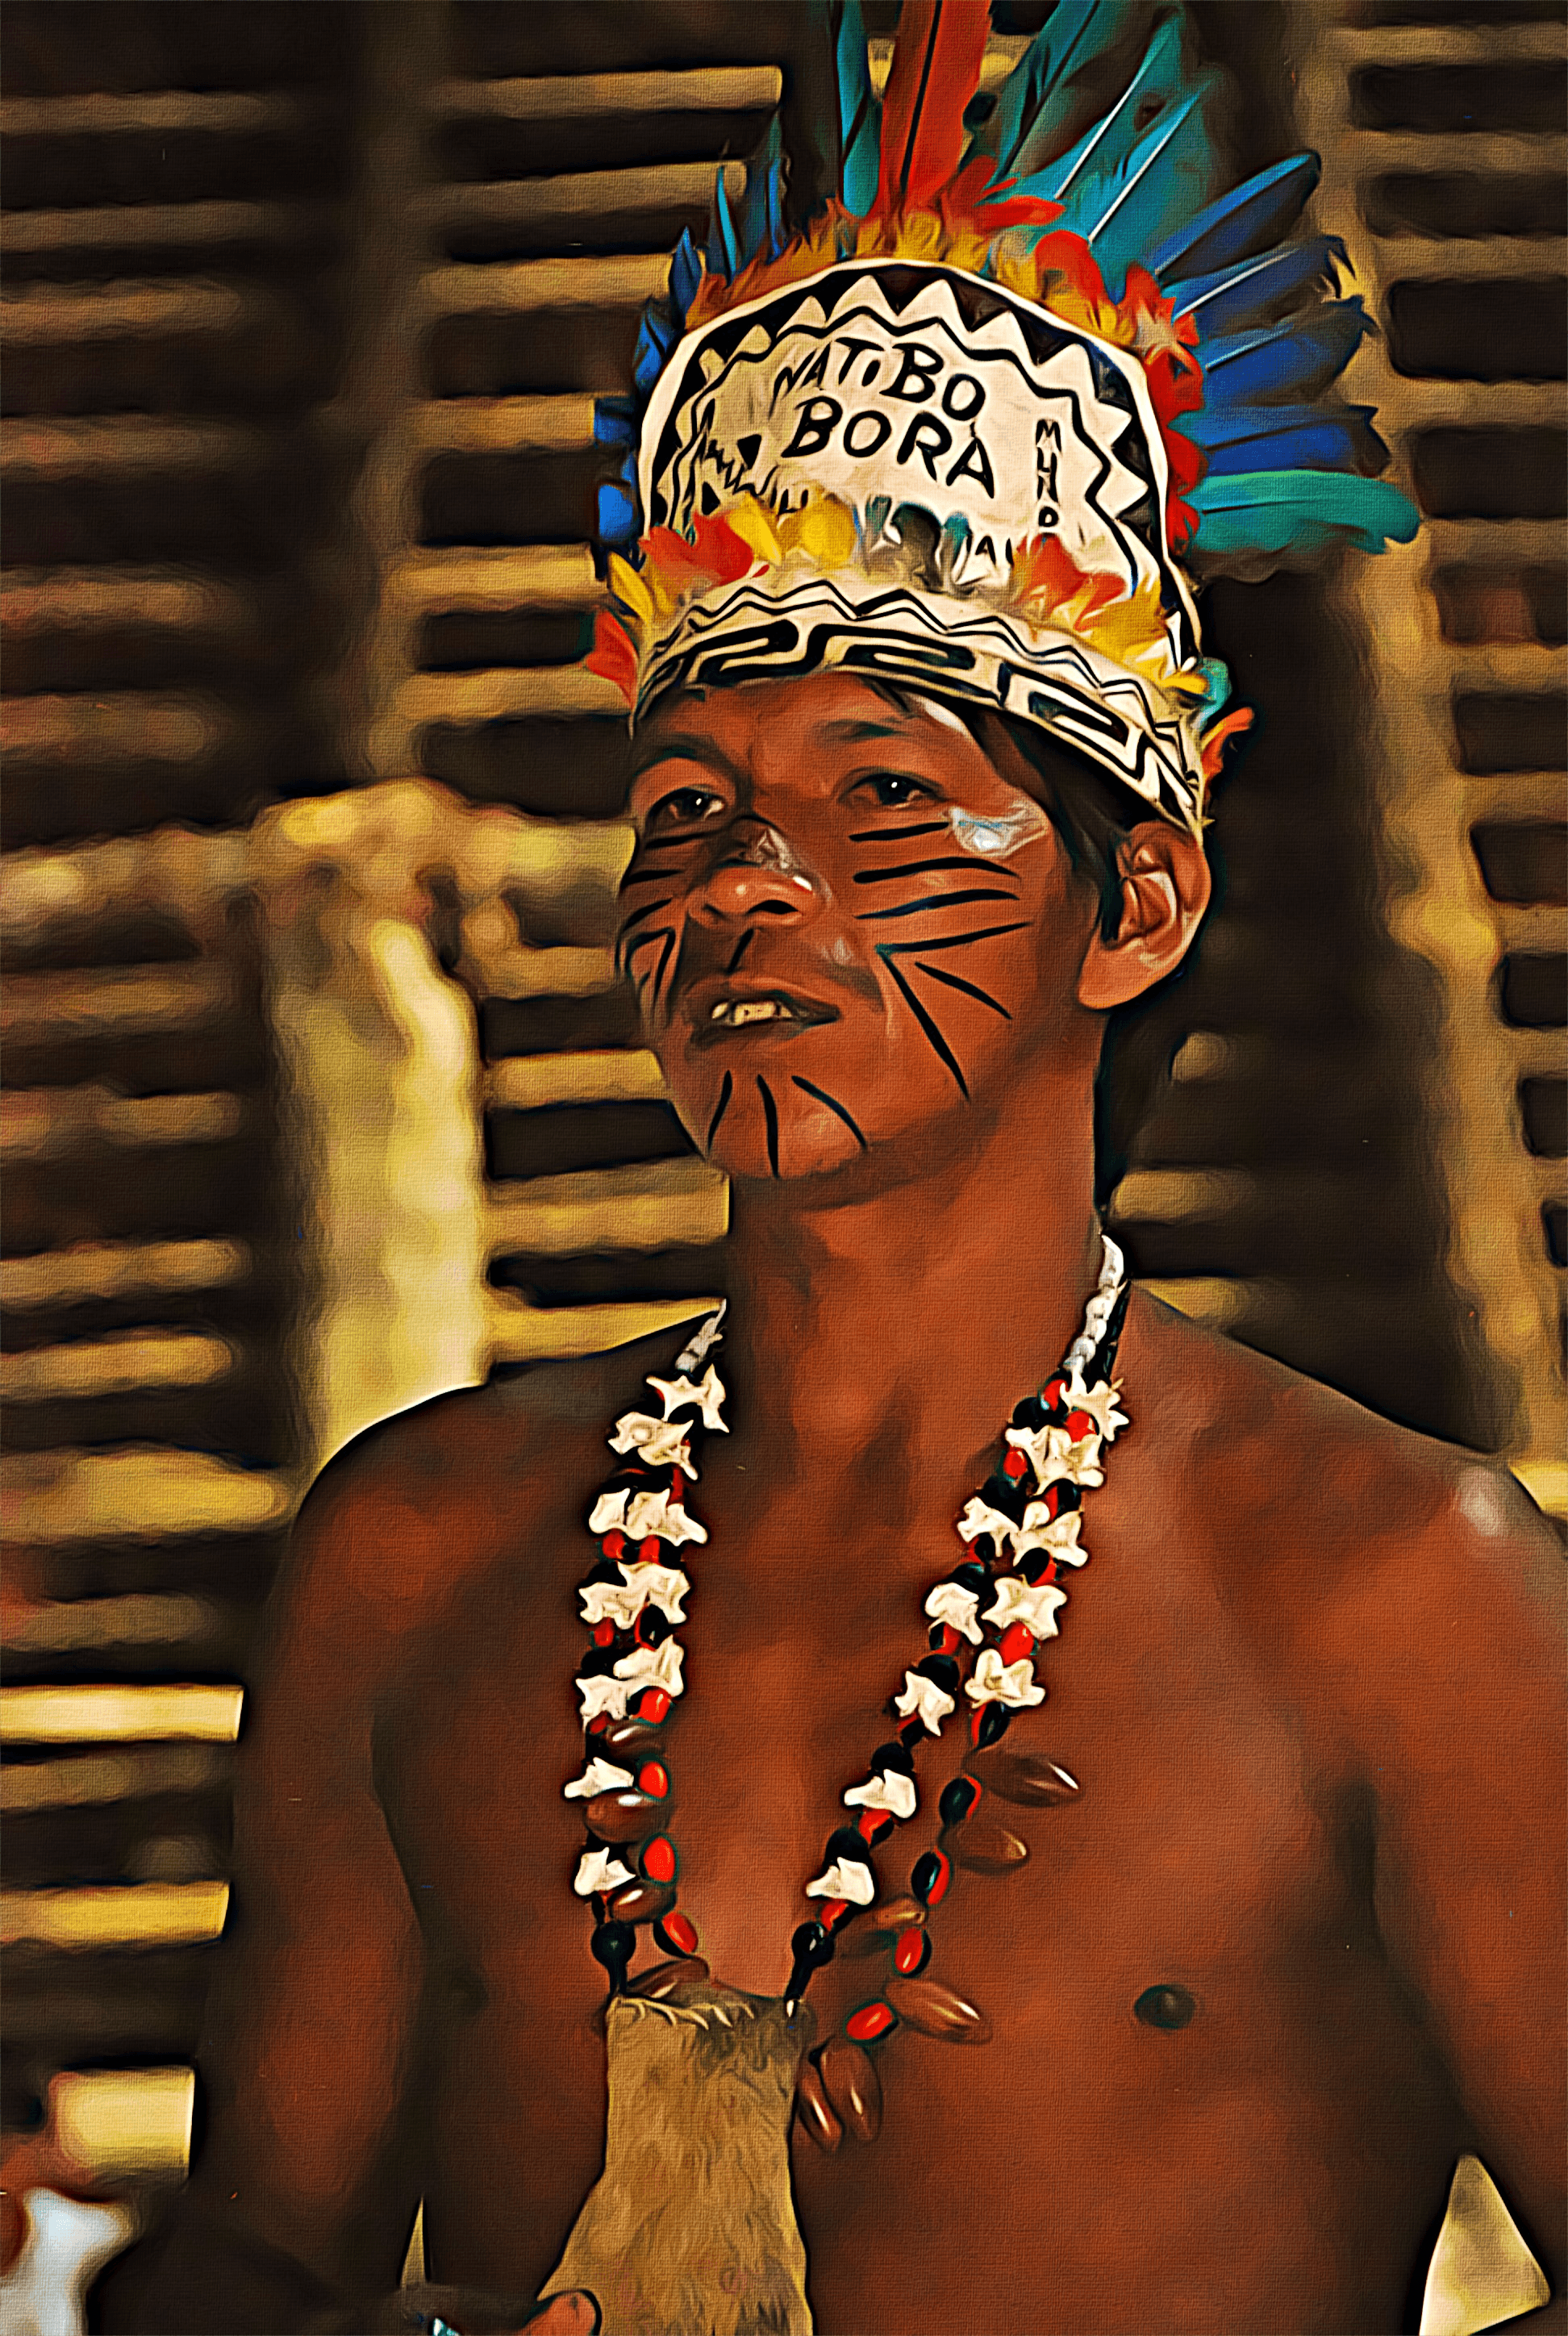 Bora Tribe Member & Friend from Iquitos Peru